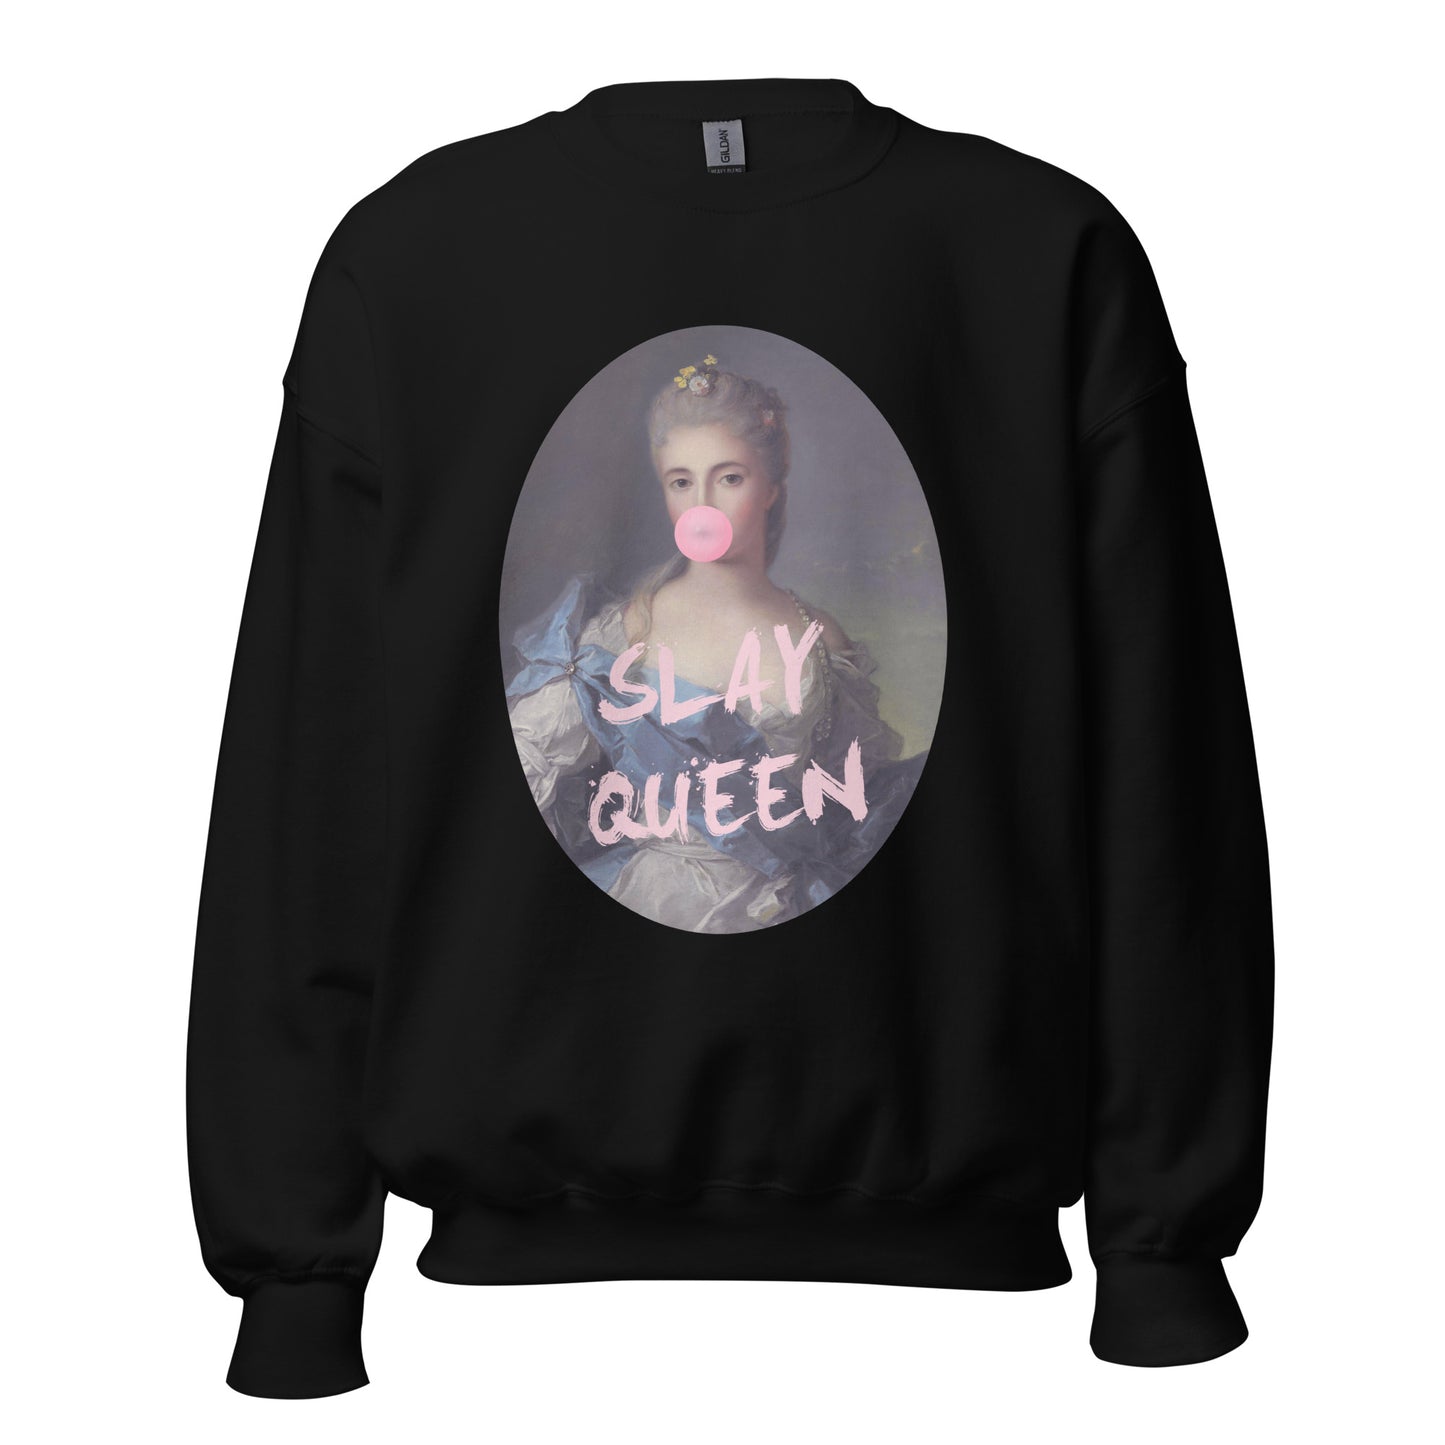 Slay Queen Unisex Sweatshirt